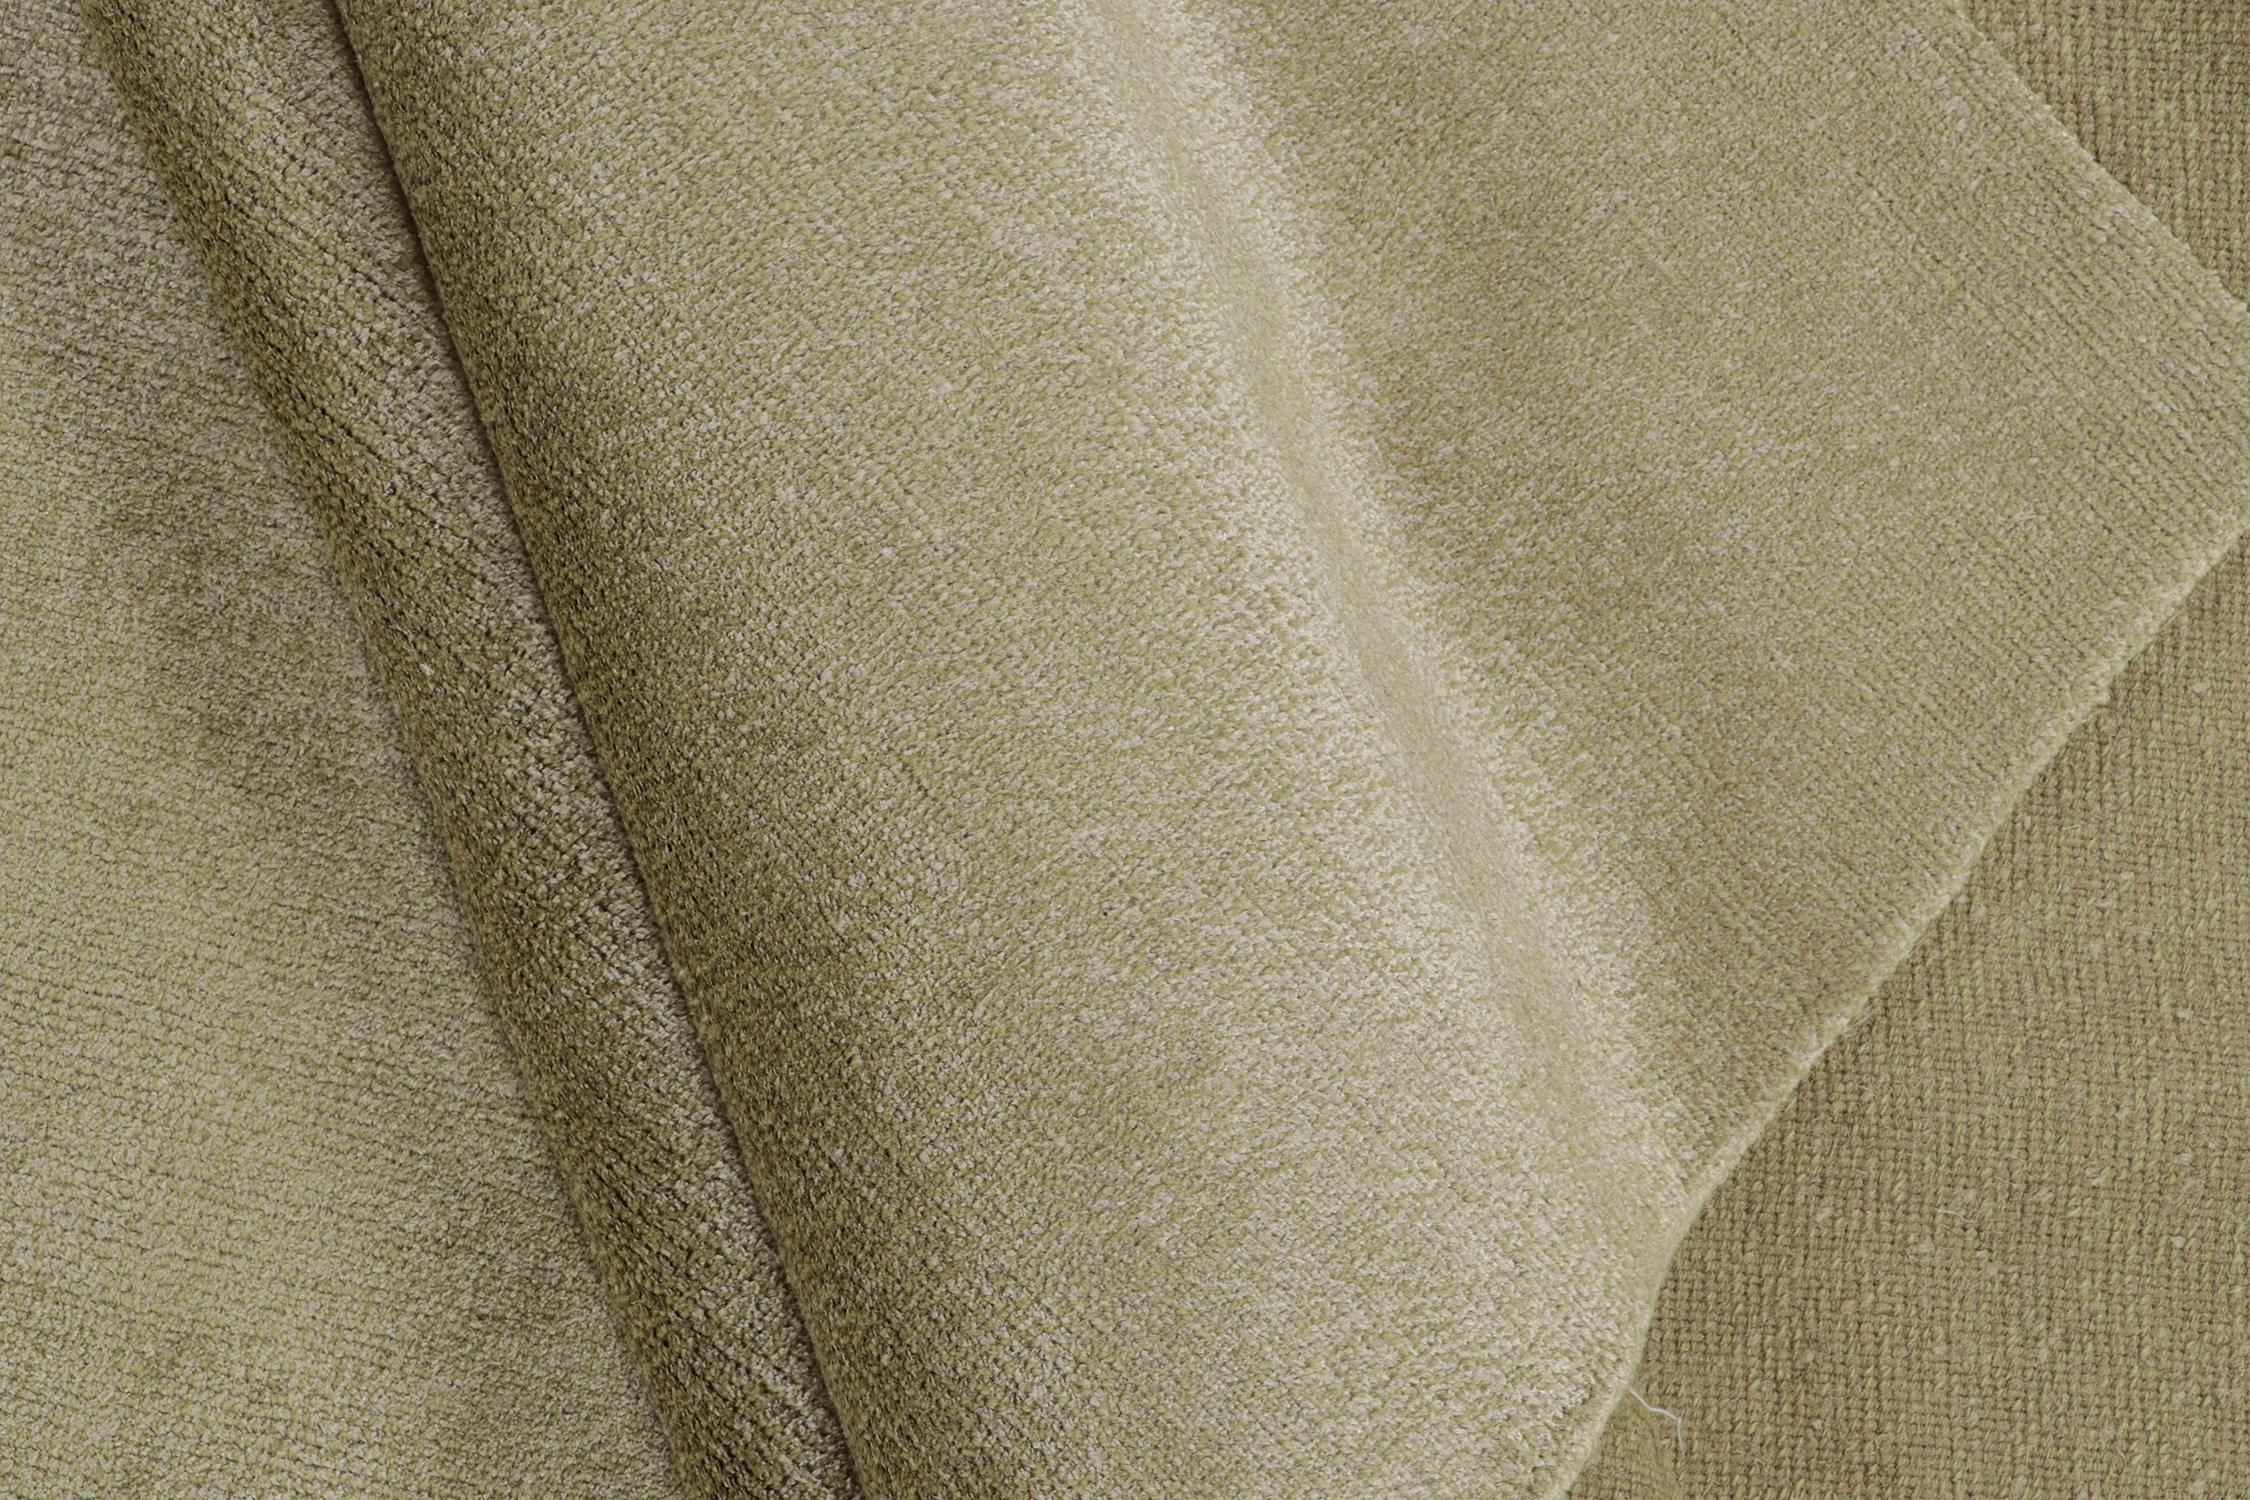 Rug & Kilim's Modern Plain Rug in Solid Beige Tones (Tapis moderne uni dans les tons de beige)